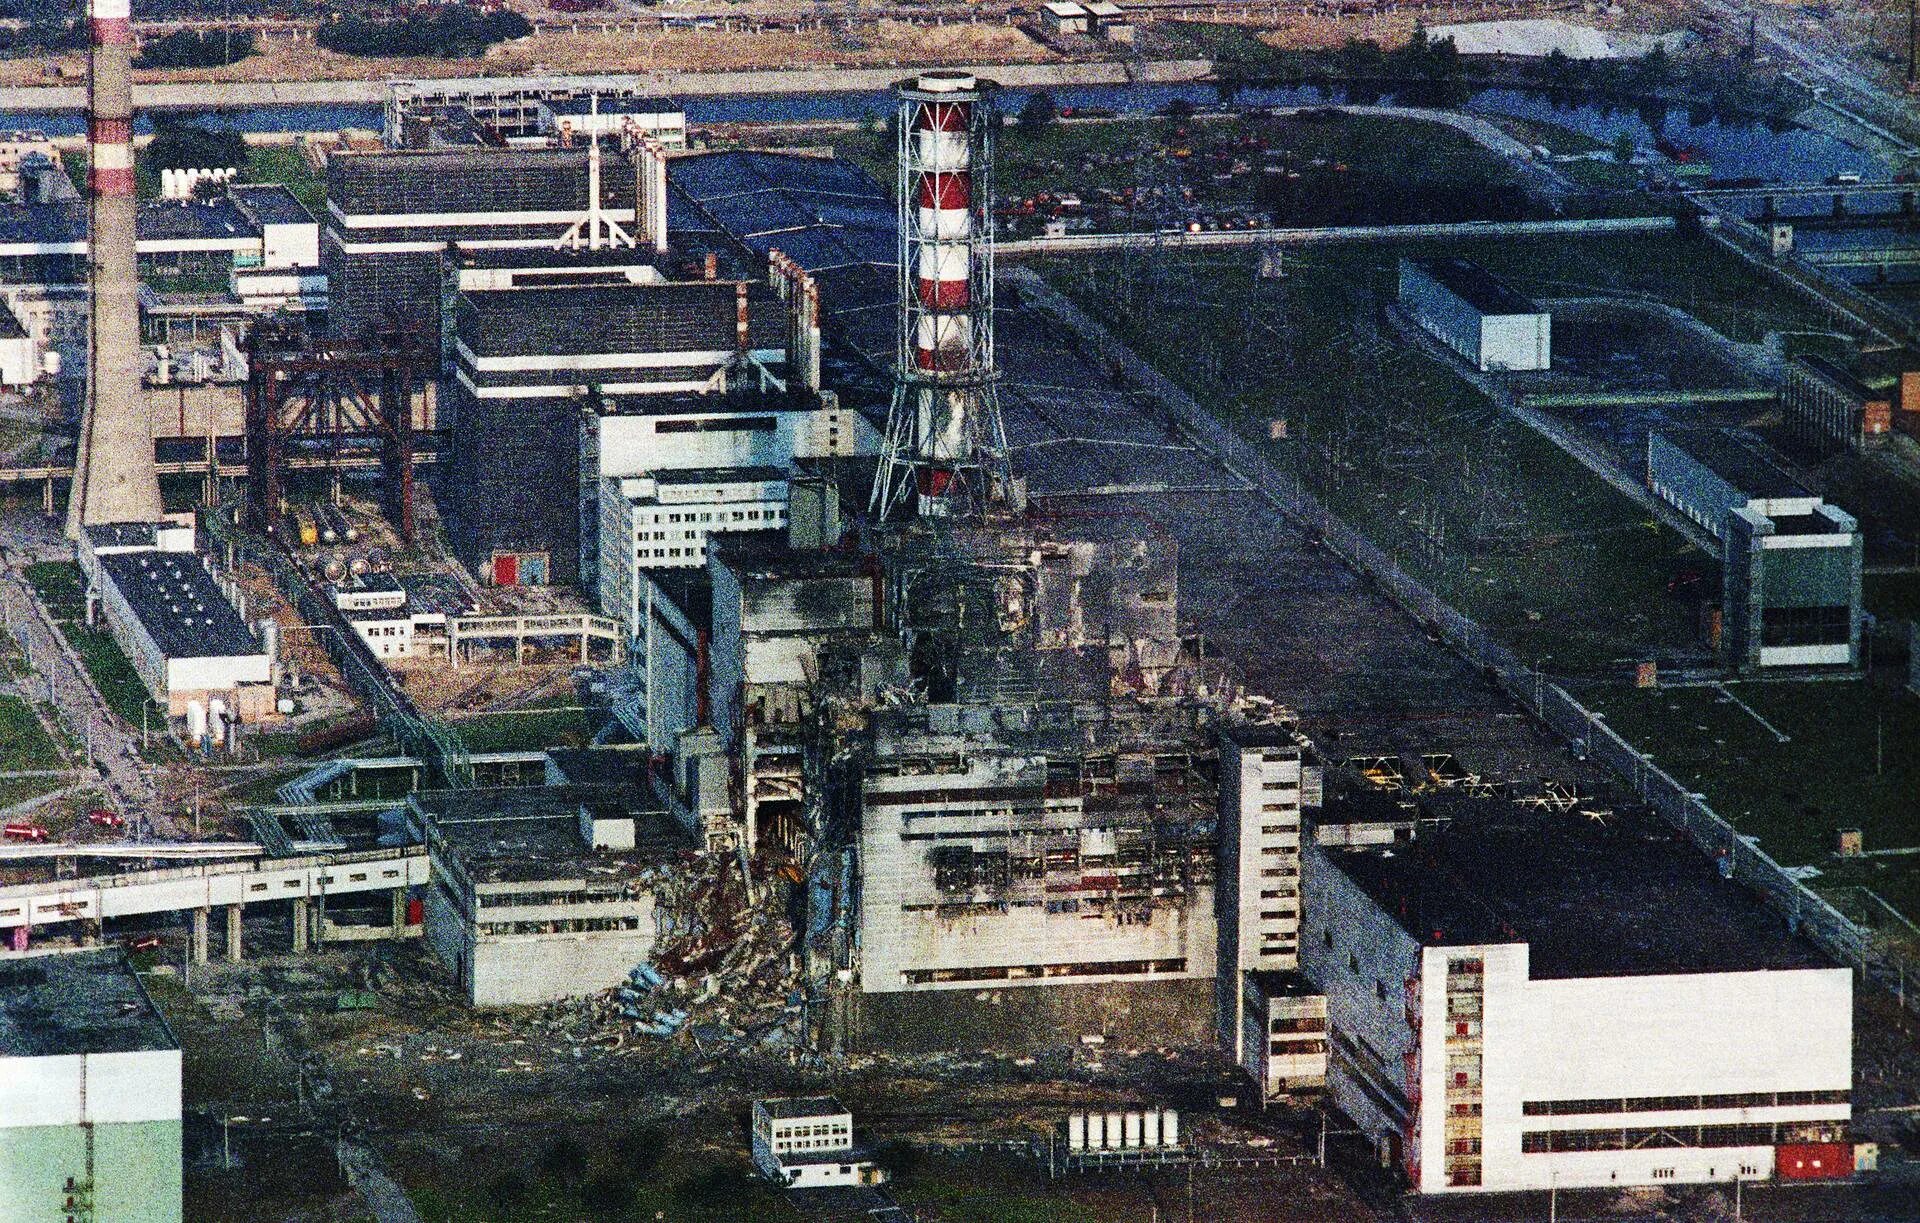 Чернобыльская аэс 26 апреля 1986 год. ЧАЭС реактор 1986. 4 Энергоблок ЧАЭС 1986. Катастрофа на Чернобыльской АЭС 1986 год. Припять ЧАЭС 1986.